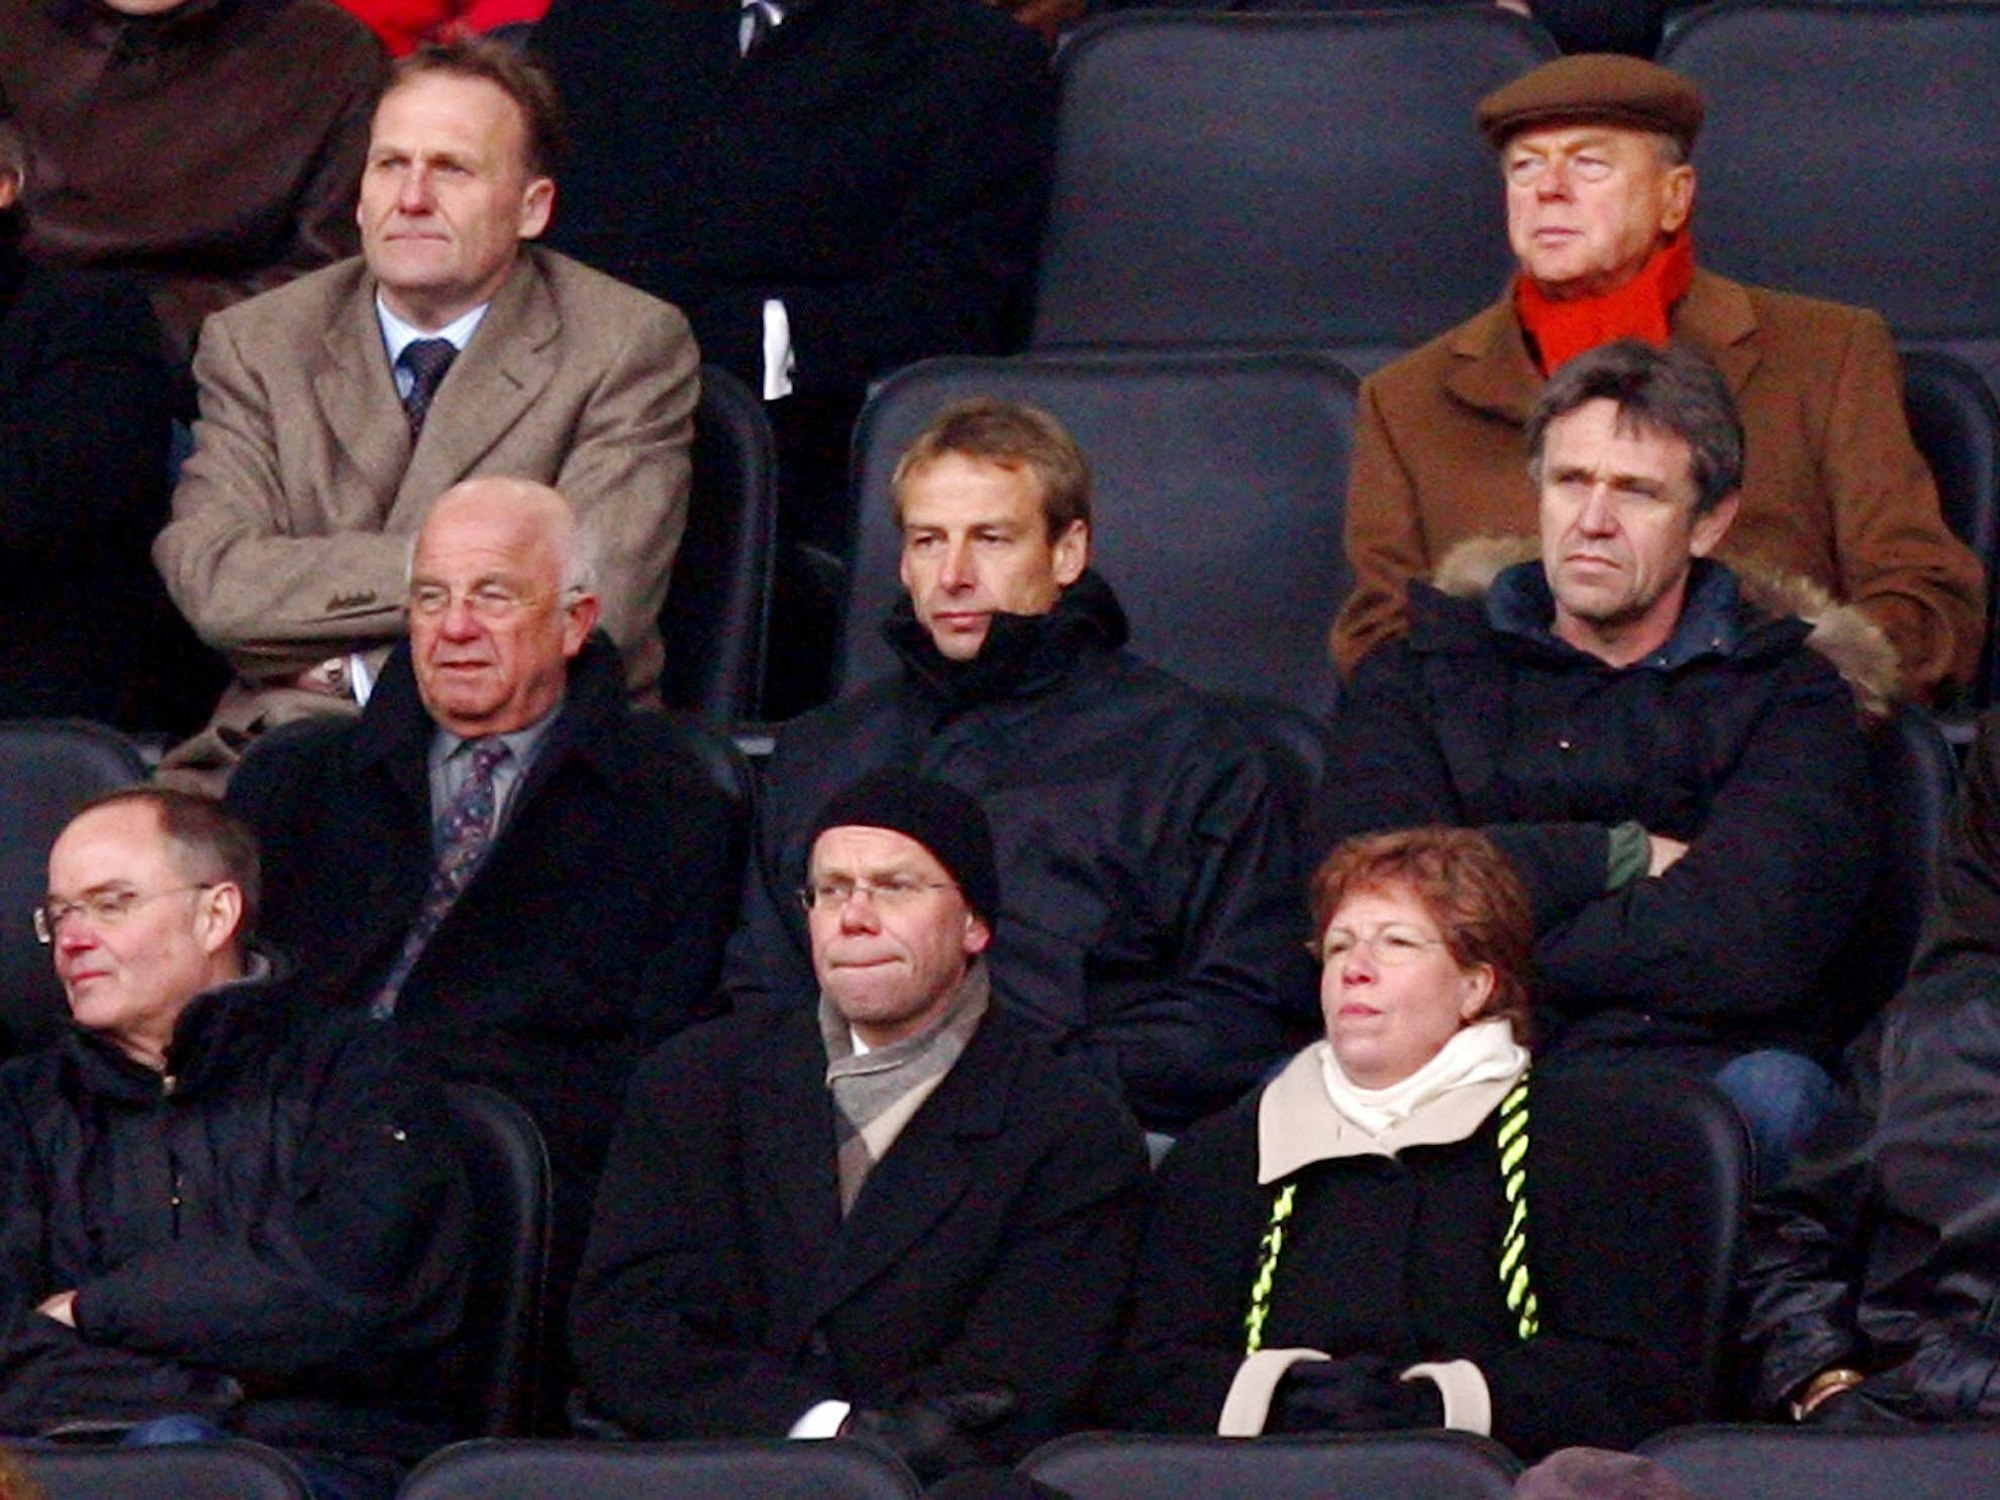 Bundestrainer Jürgen Klinsmann am Rande eines Bundesligaspiels auf der Tribüne, dahinter BVB-Geschäftsführer Hans-Joachim Watzke.